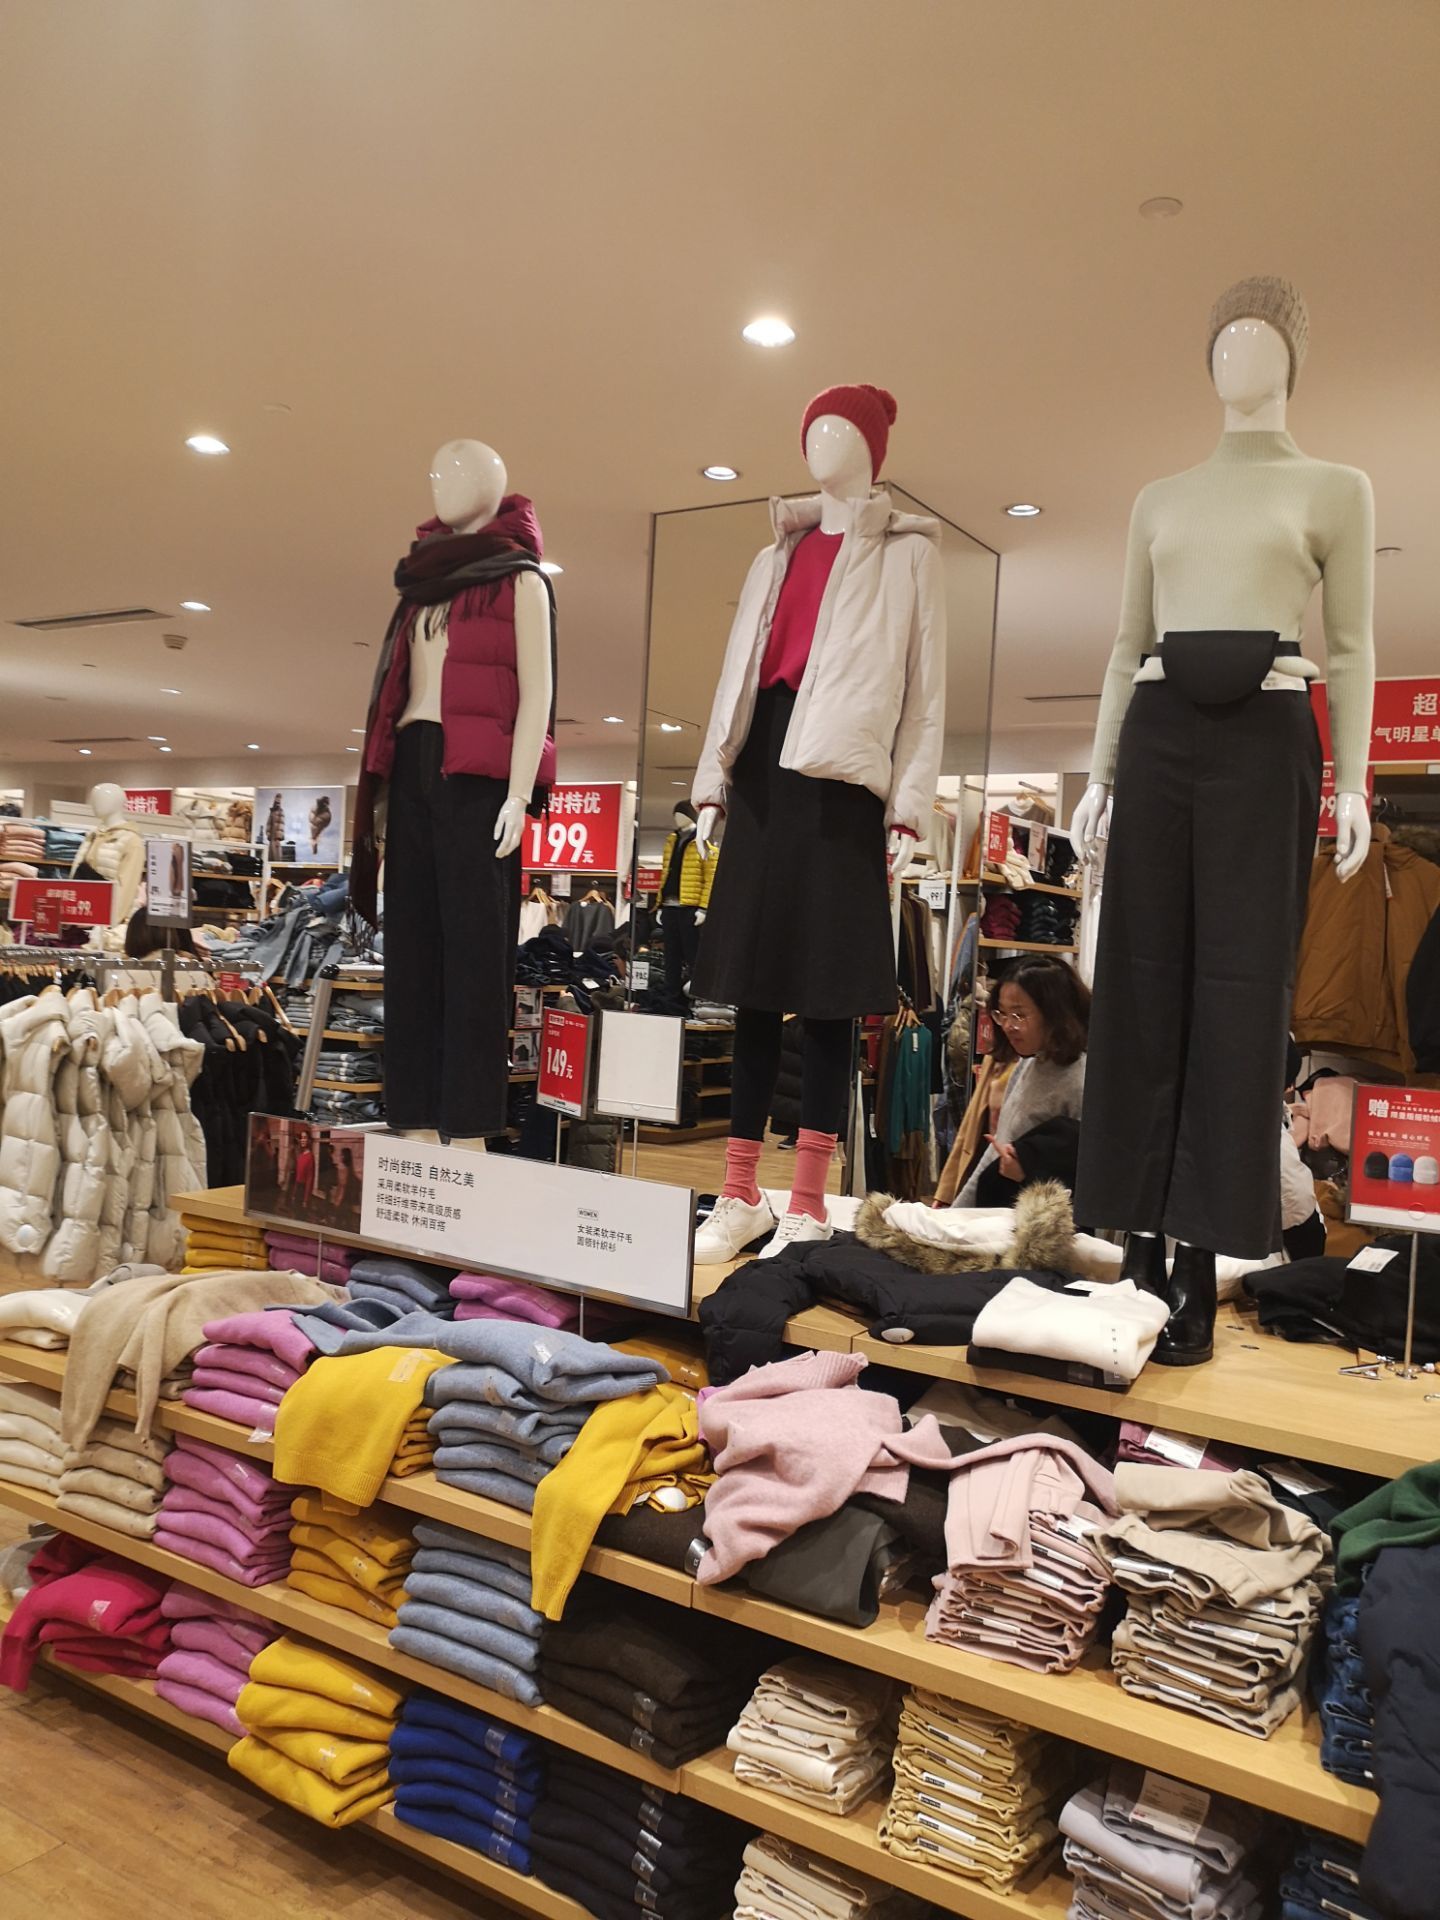 【携程攻略】南京uniqlo(金鹰天地店)购物,优衣库在南京有很多门店